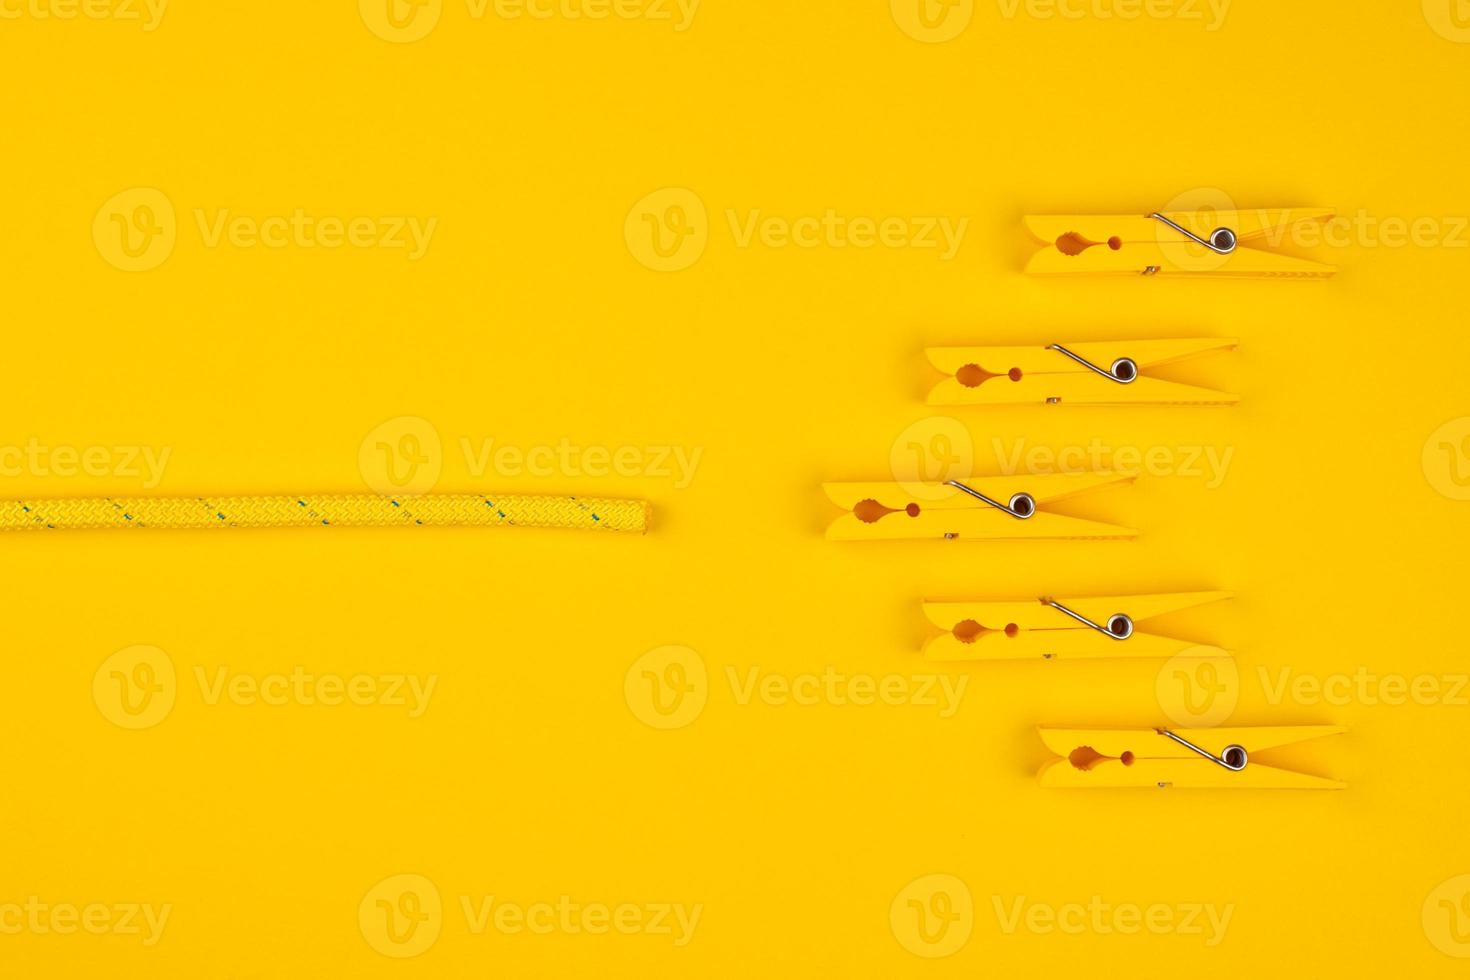 pinces à linge jaunes et corde. concept de pause chanceuse. photo